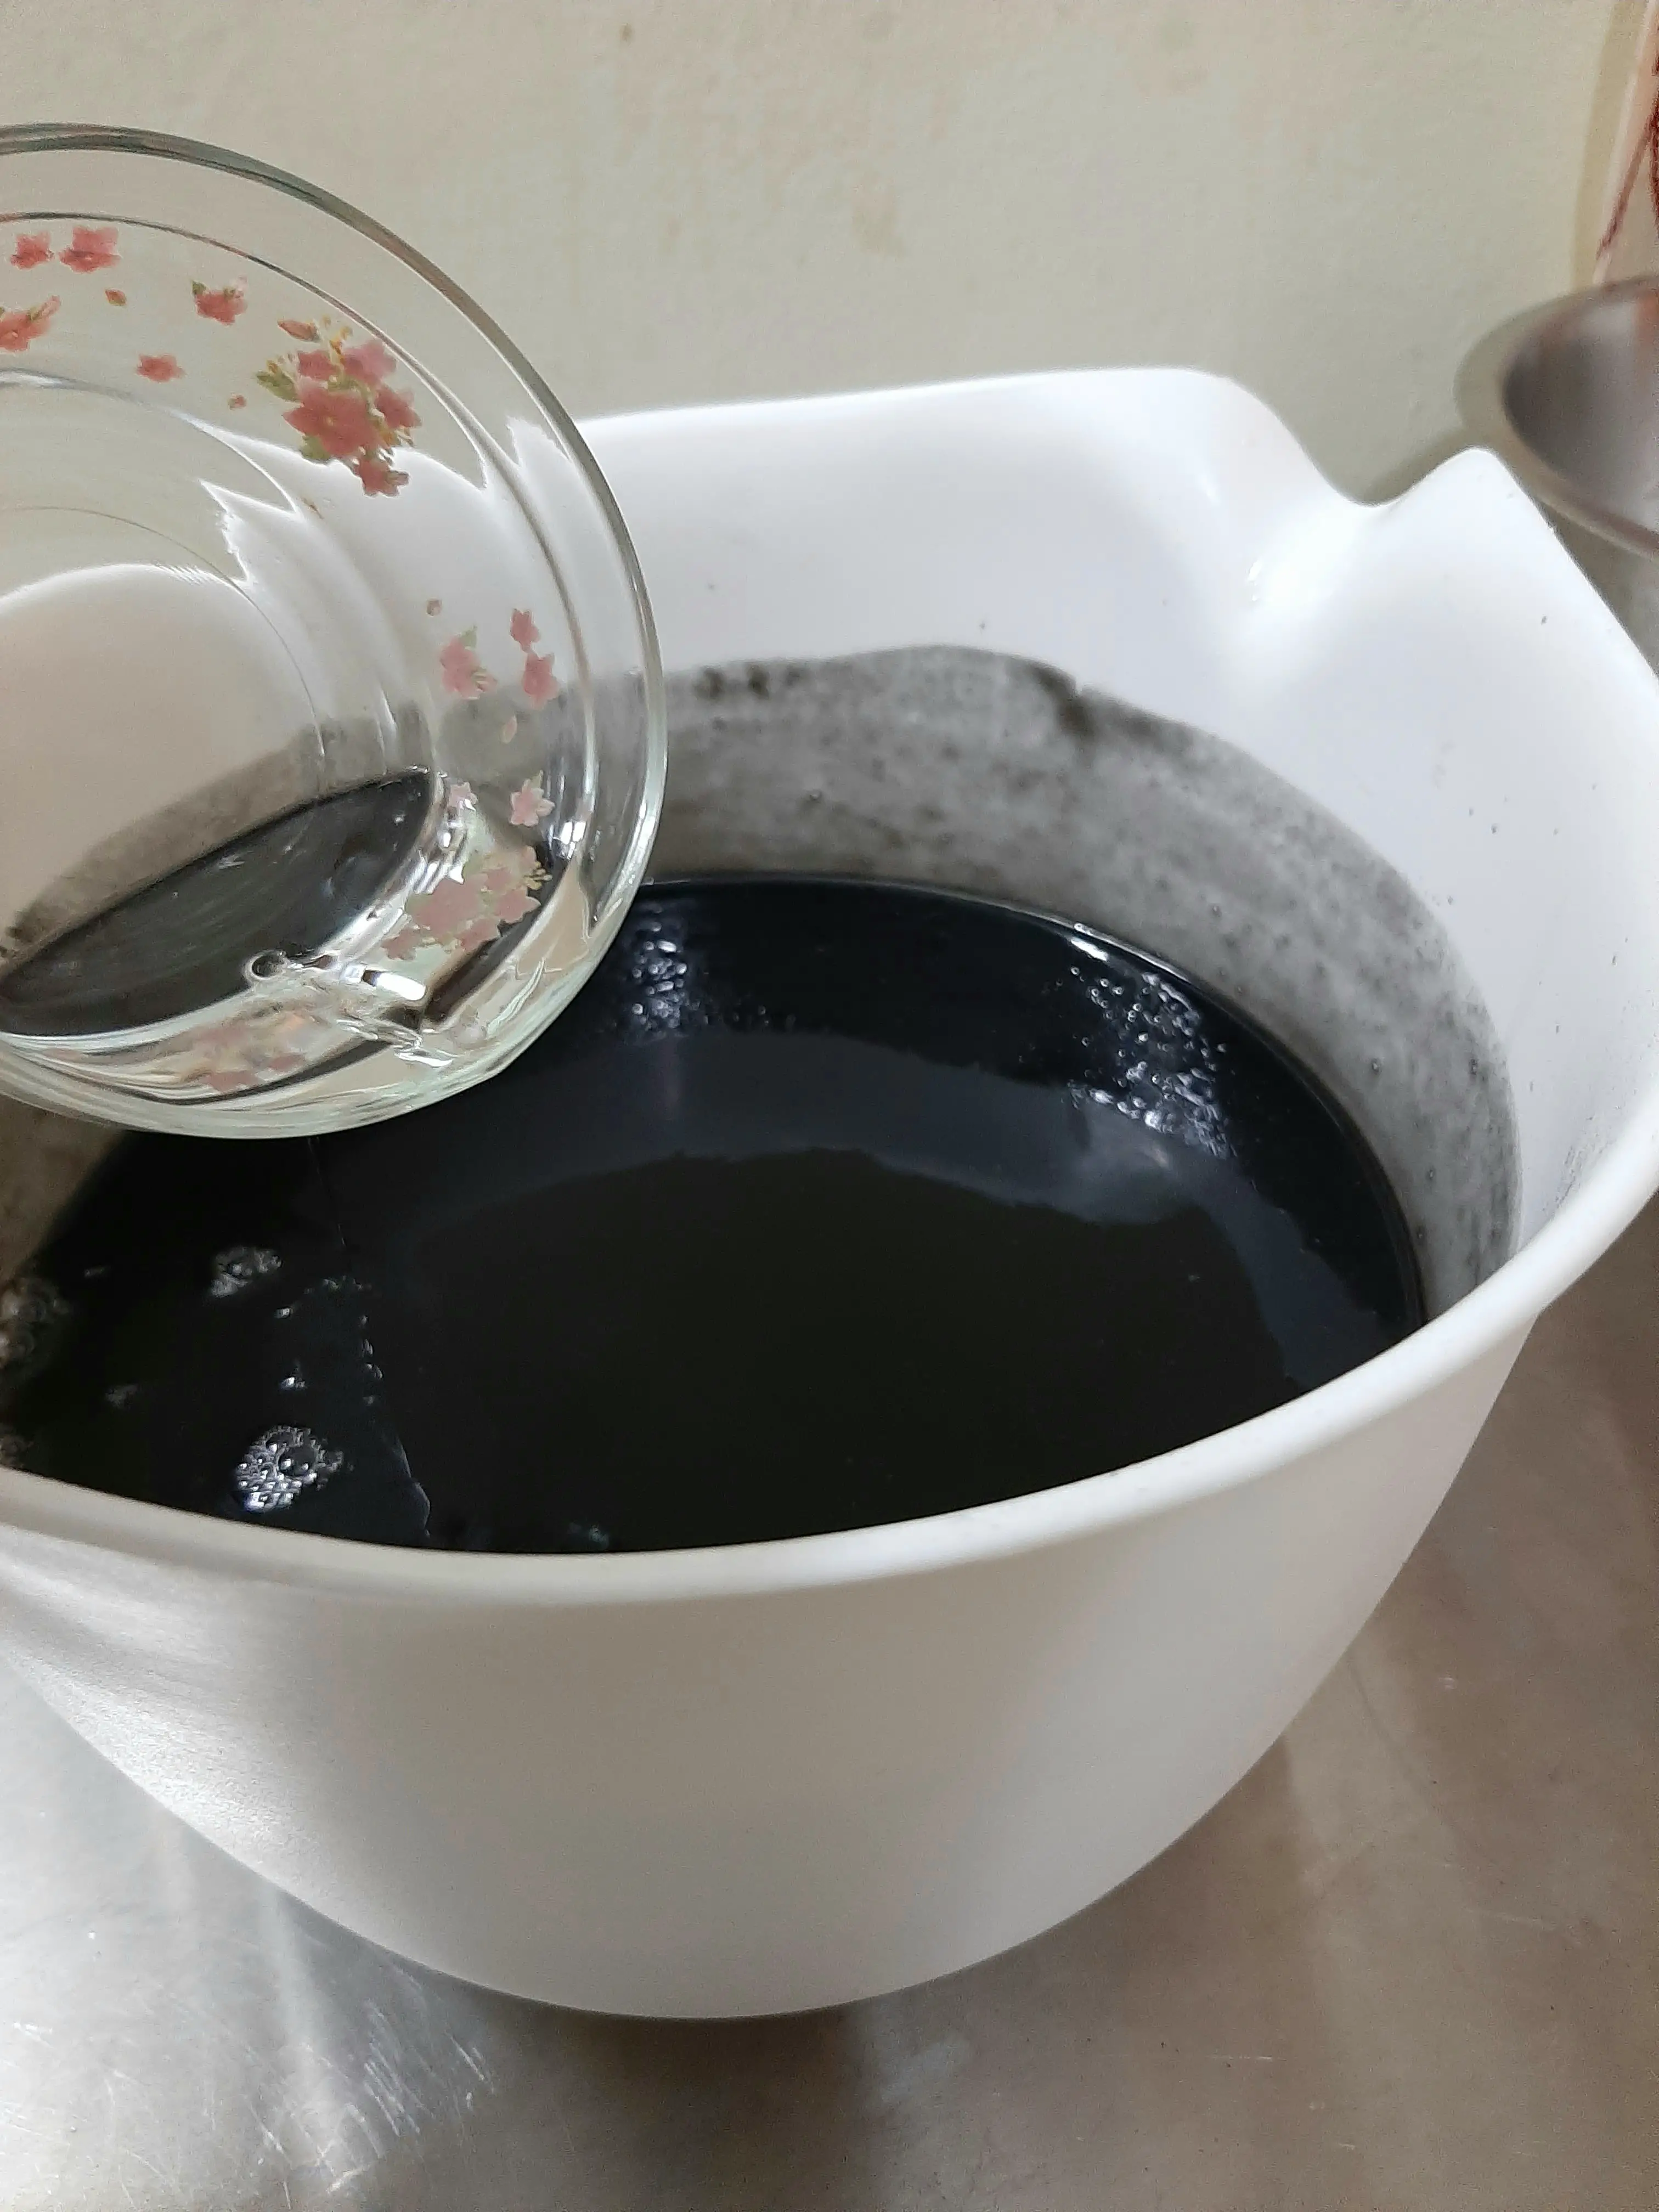 Adding Tea Tree Oil